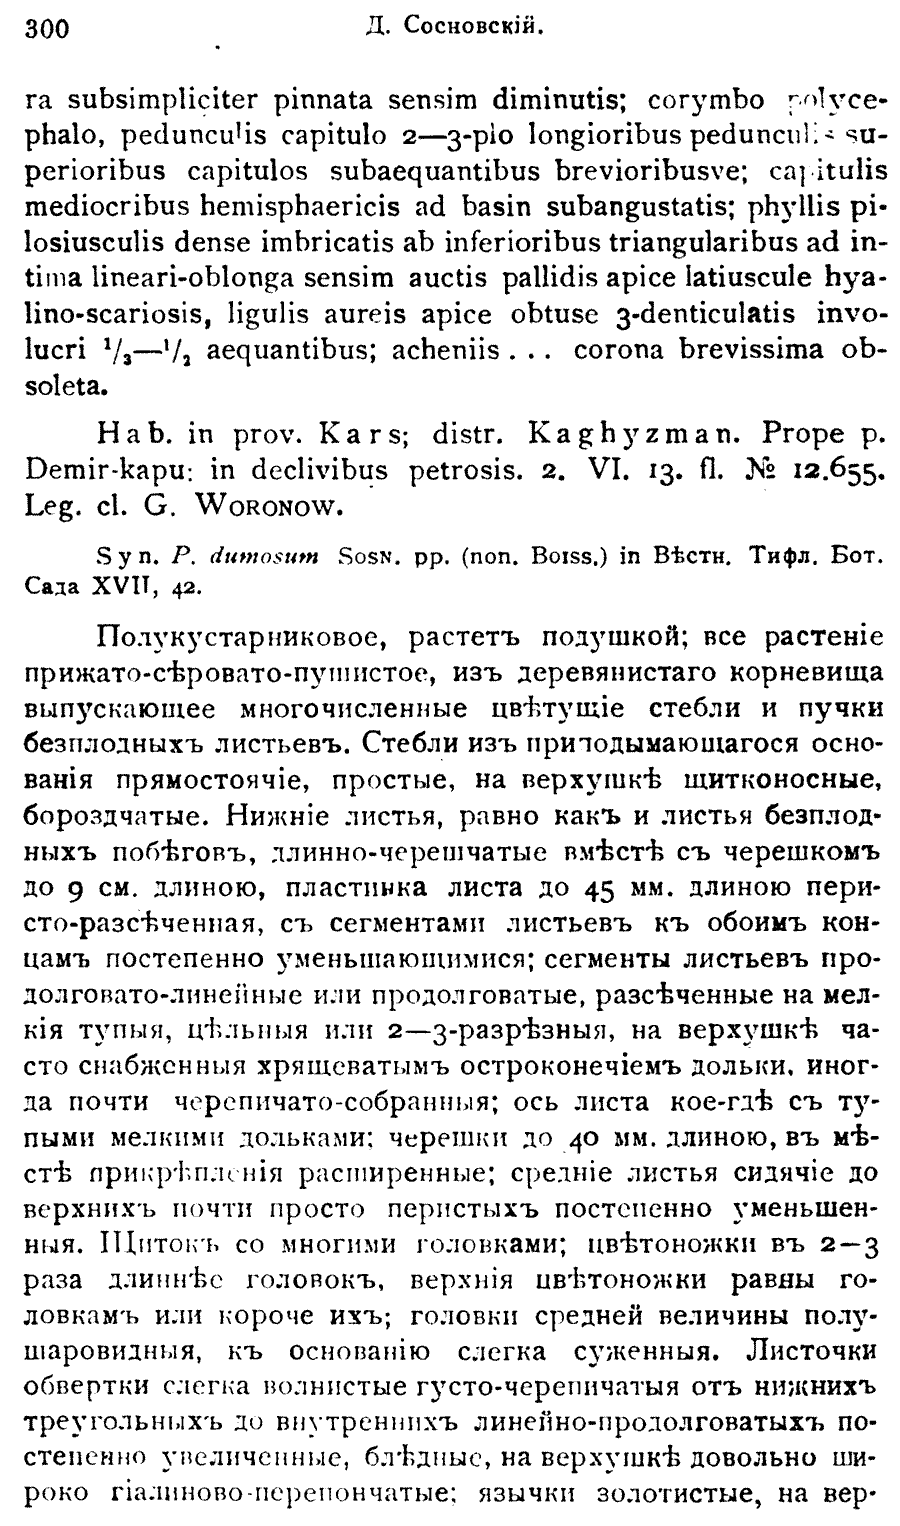 https://forum.plantarium.ru/misc.php?action=pun_attachment&amp;item=31423